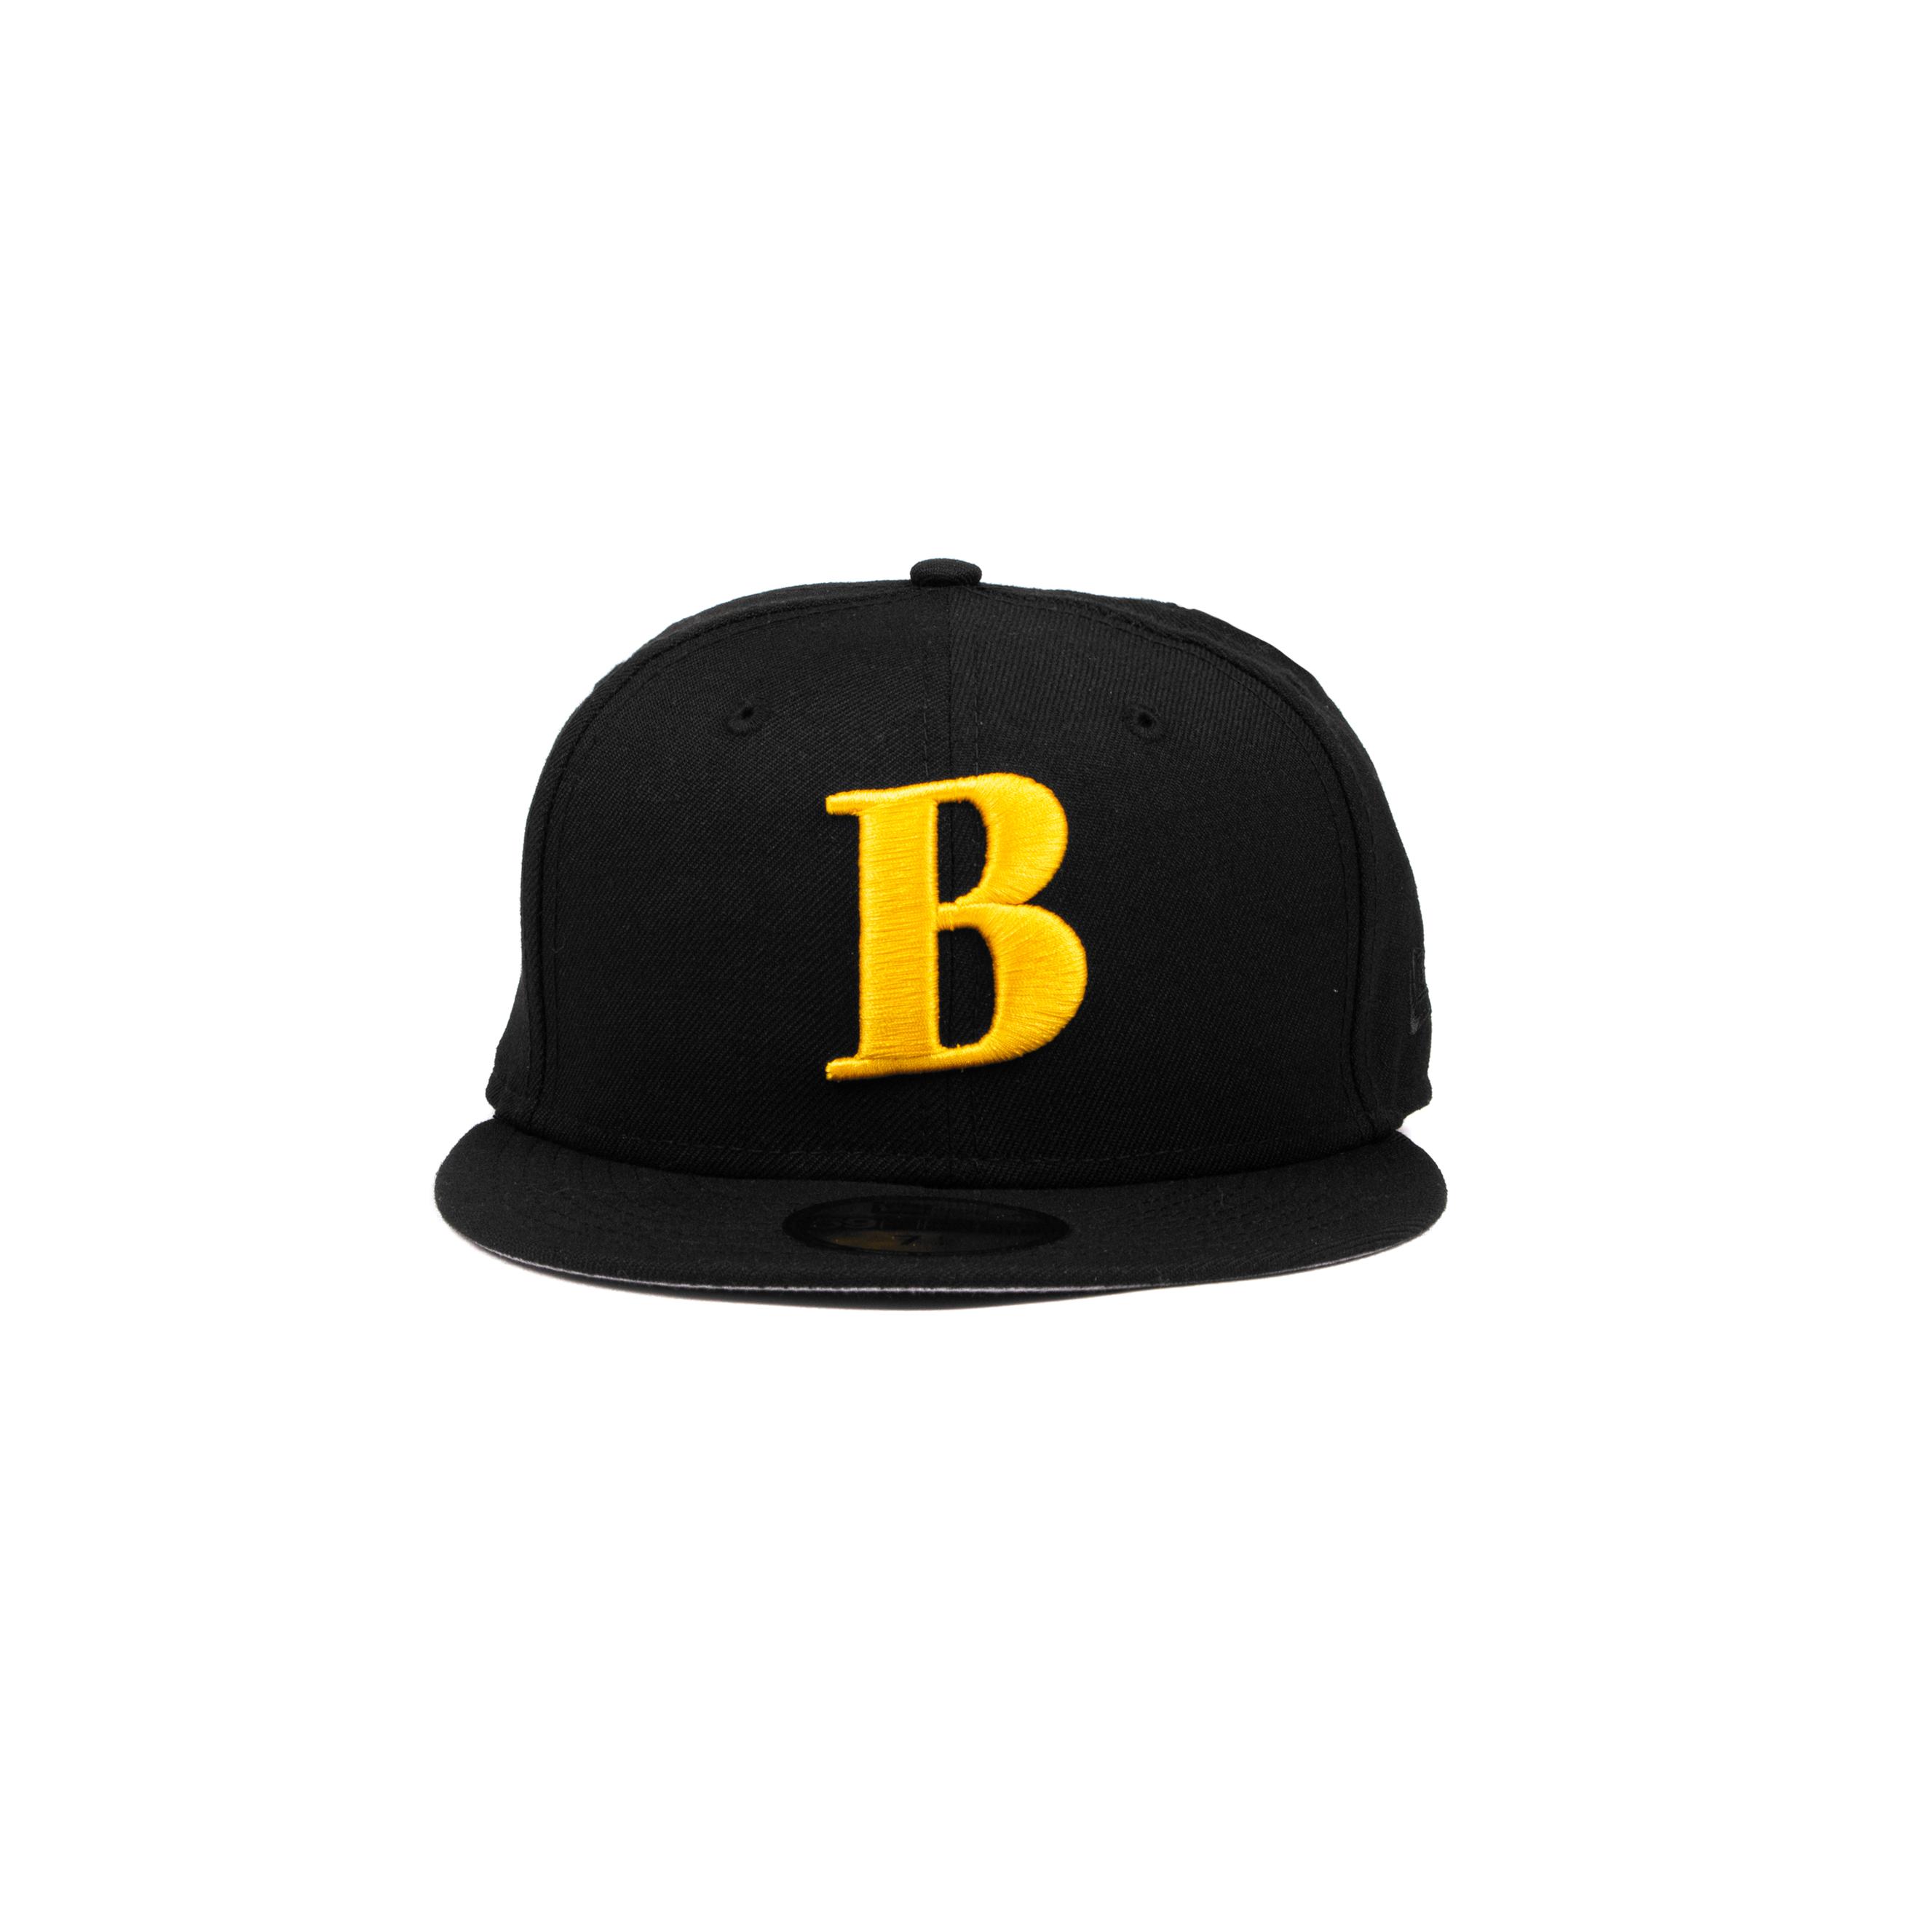 Better™ Gift Shop B Logo New Era Cap (Black/Yellow) by BETTER GIFT SHOP